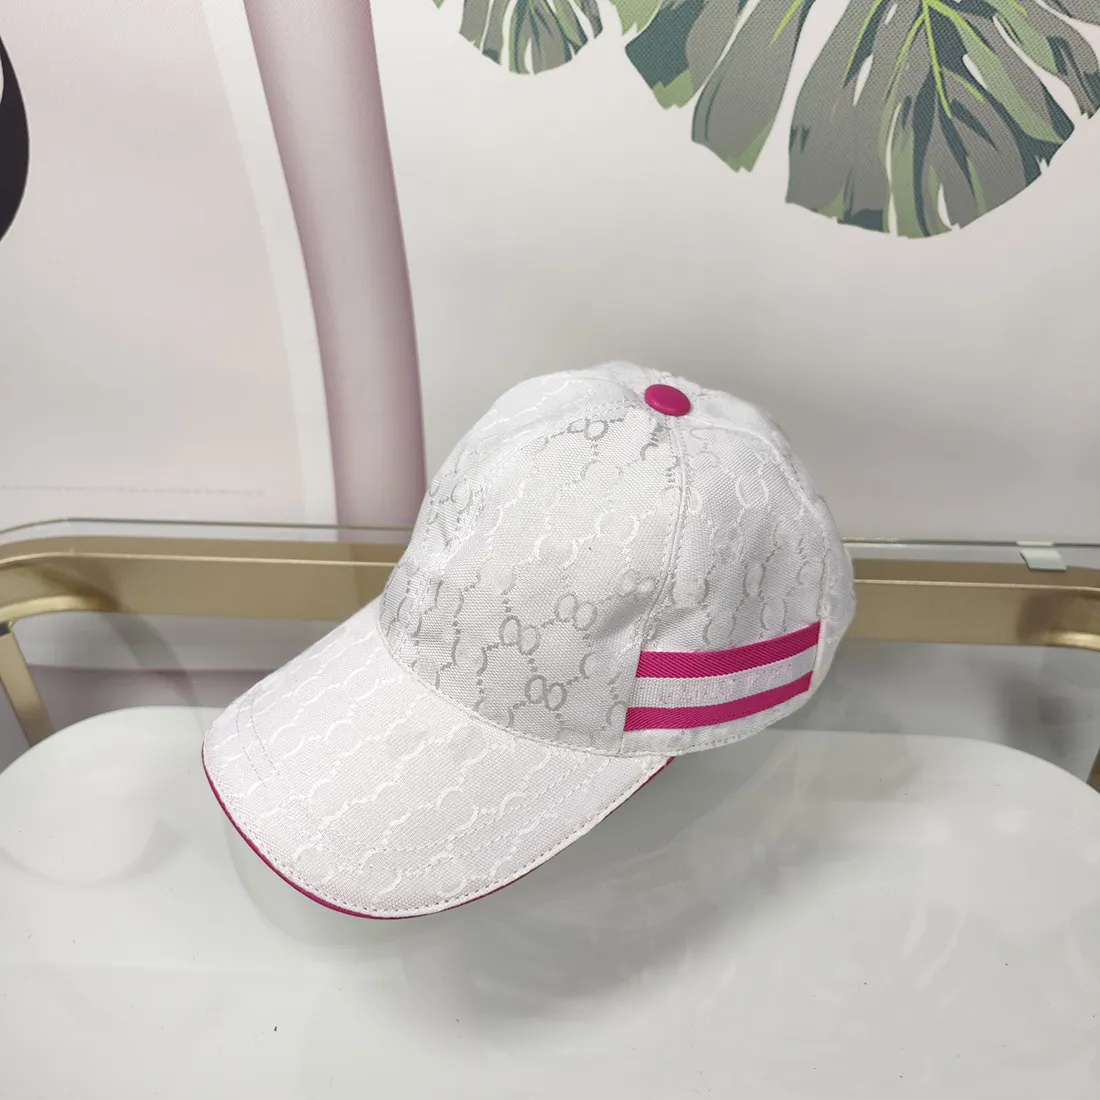 Новый стиль S Desingers Письмо Бейсбольная кепка Женские кепки Manempty Вышивка Шляпы от солнца Мода Досуг Дизайн Ведро Шляпа 7 цветов Вышитая солнцезащитная шляпа